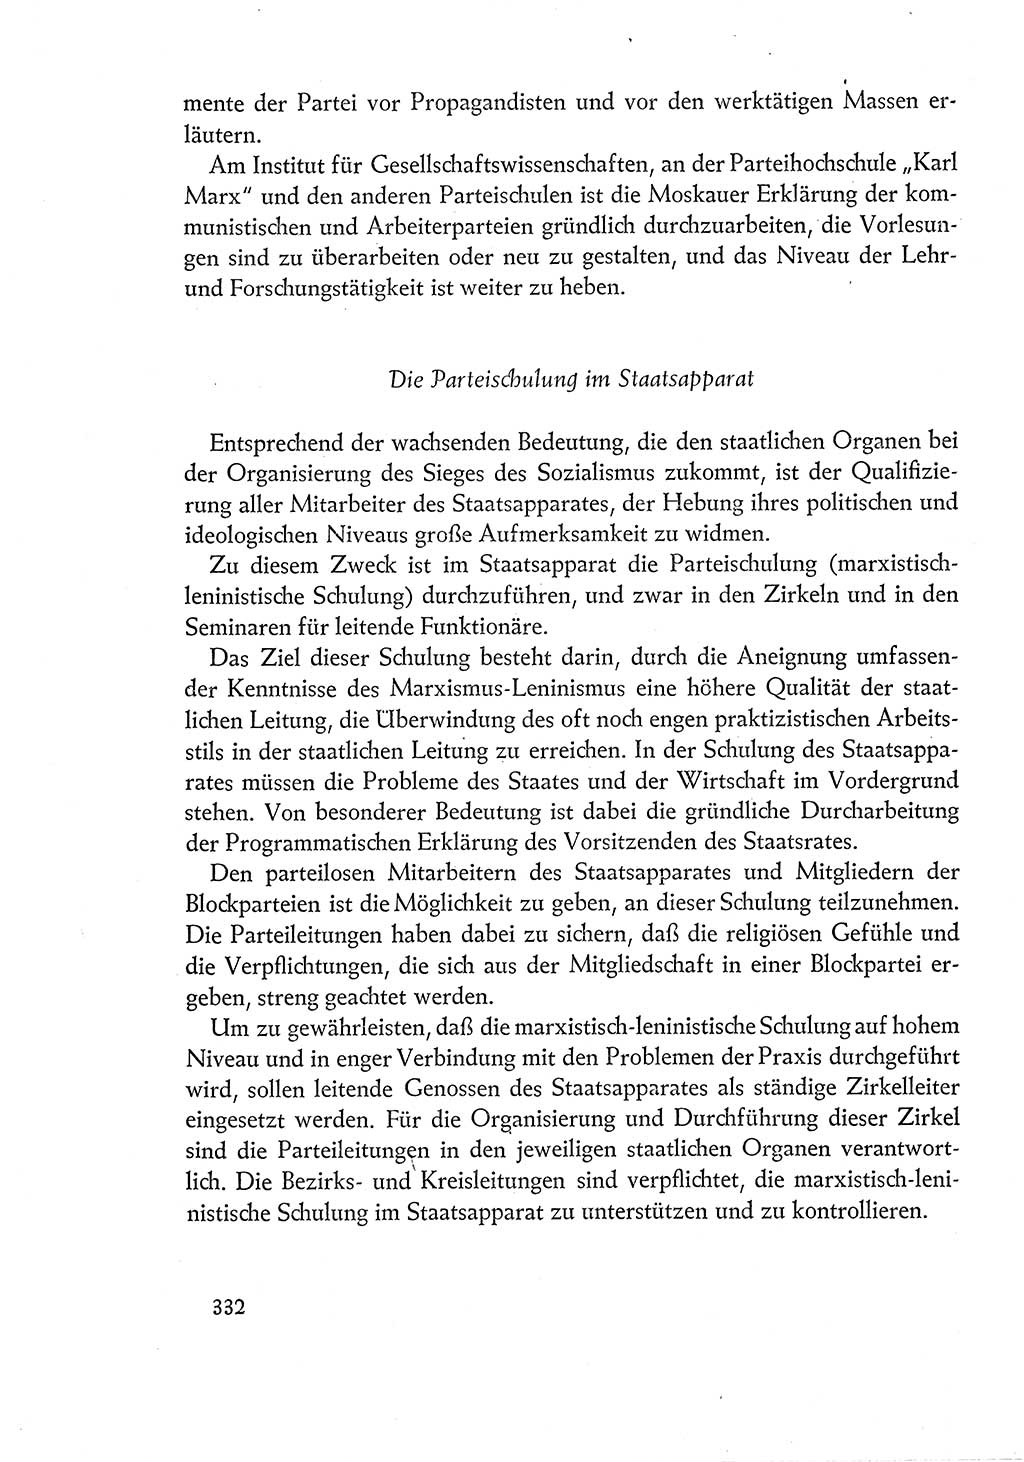 Dokumente der Sozialistischen Einheitspartei Deutschlands (SED) [Deutsche Demokratische Republik (DDR)] 1960-1961, Seite 332 (Dok. SED DDR 1960-1961, S. 332)